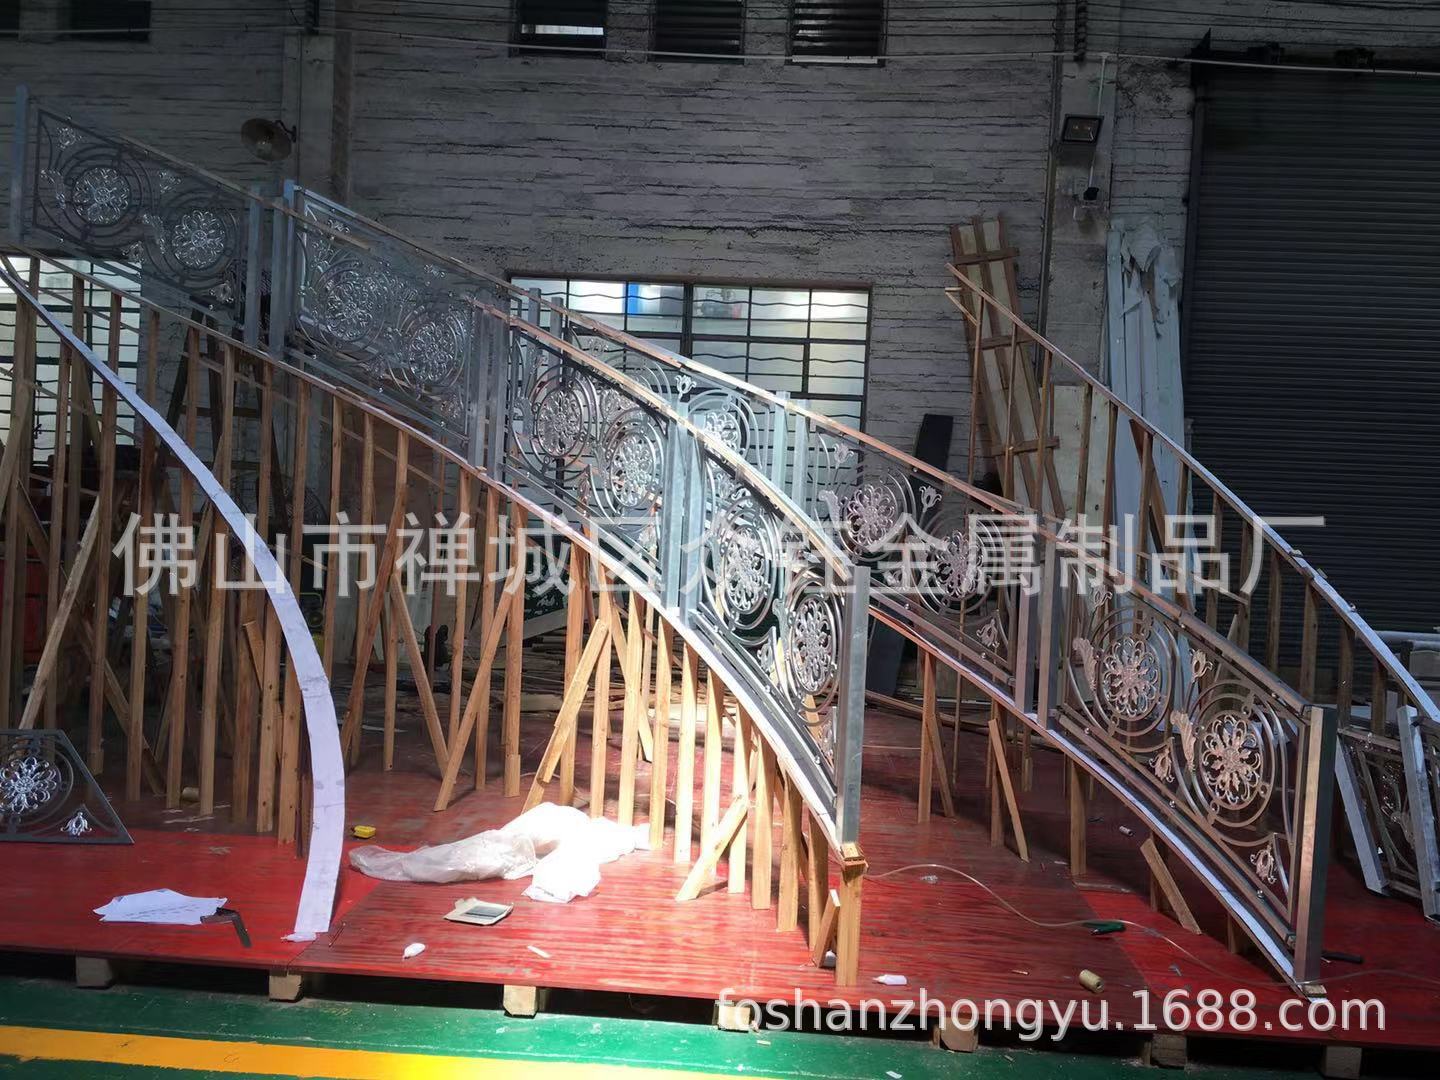 贵族世家的楼梯铜艺浮雕镀金护栏立体浮雕刻24K金护栏门第象征示例图15